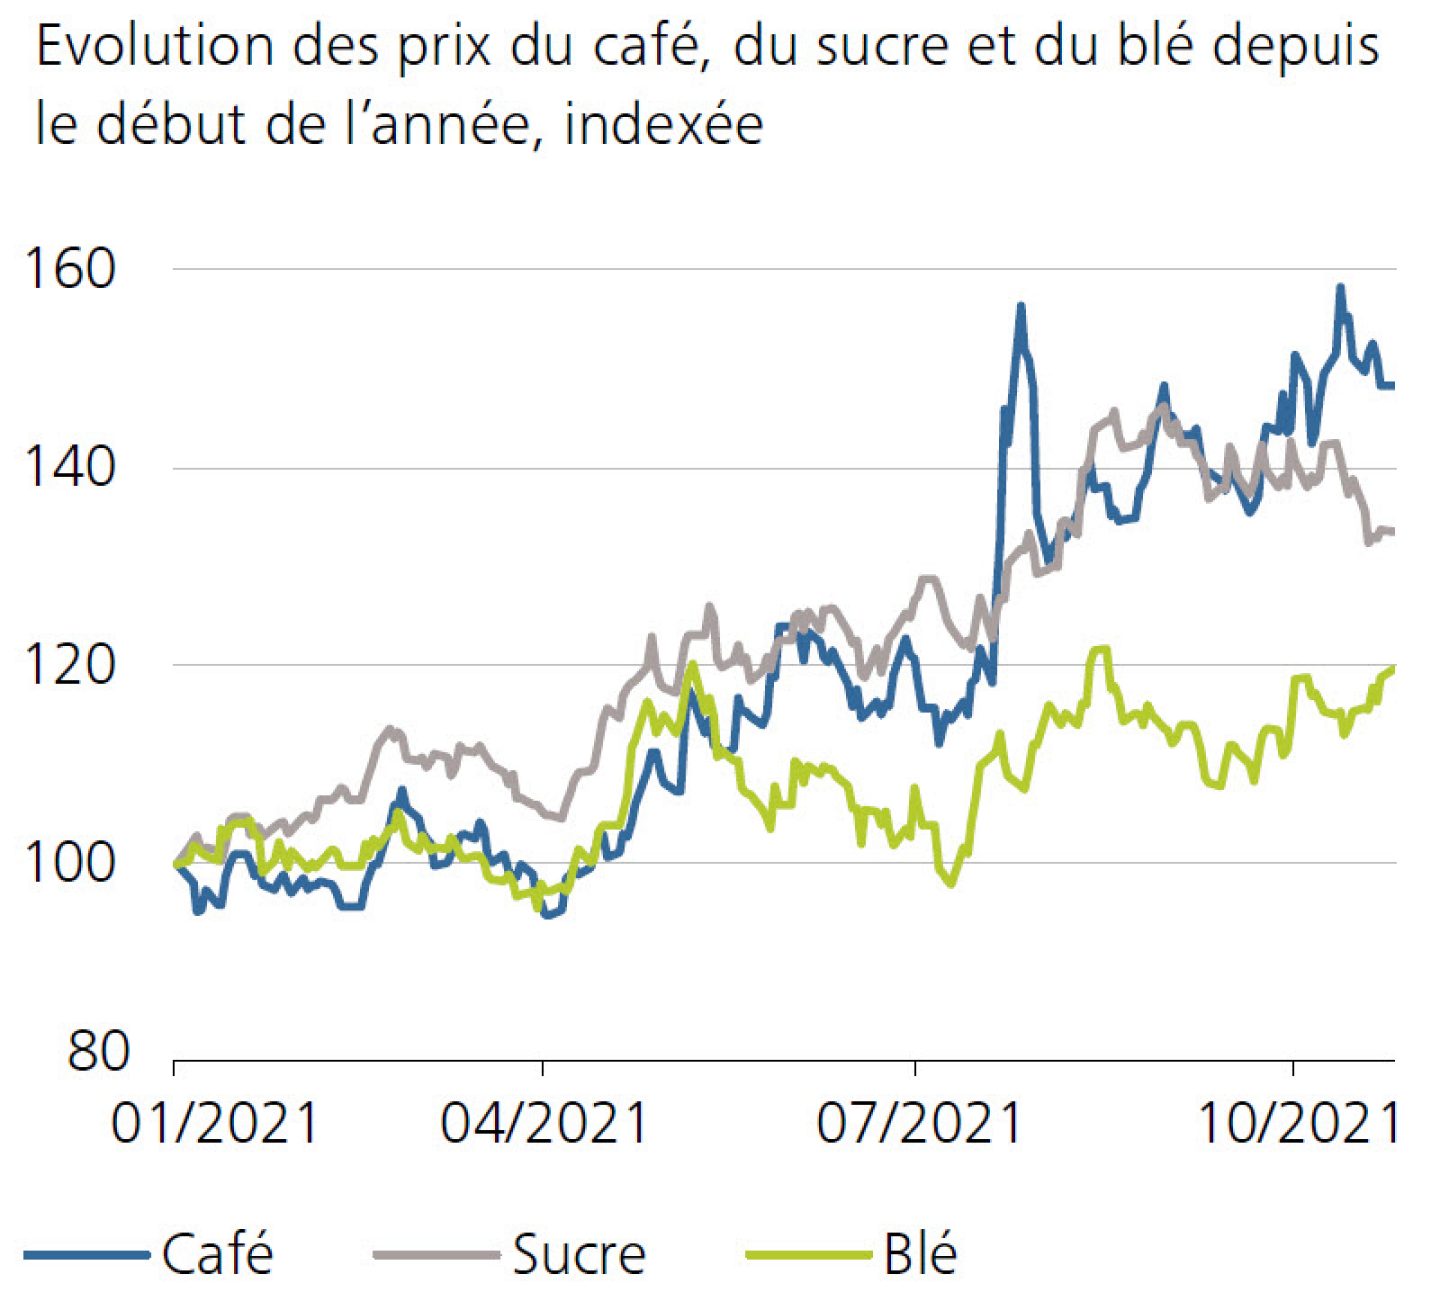 Evolution des prix du café, du sucre et du blé